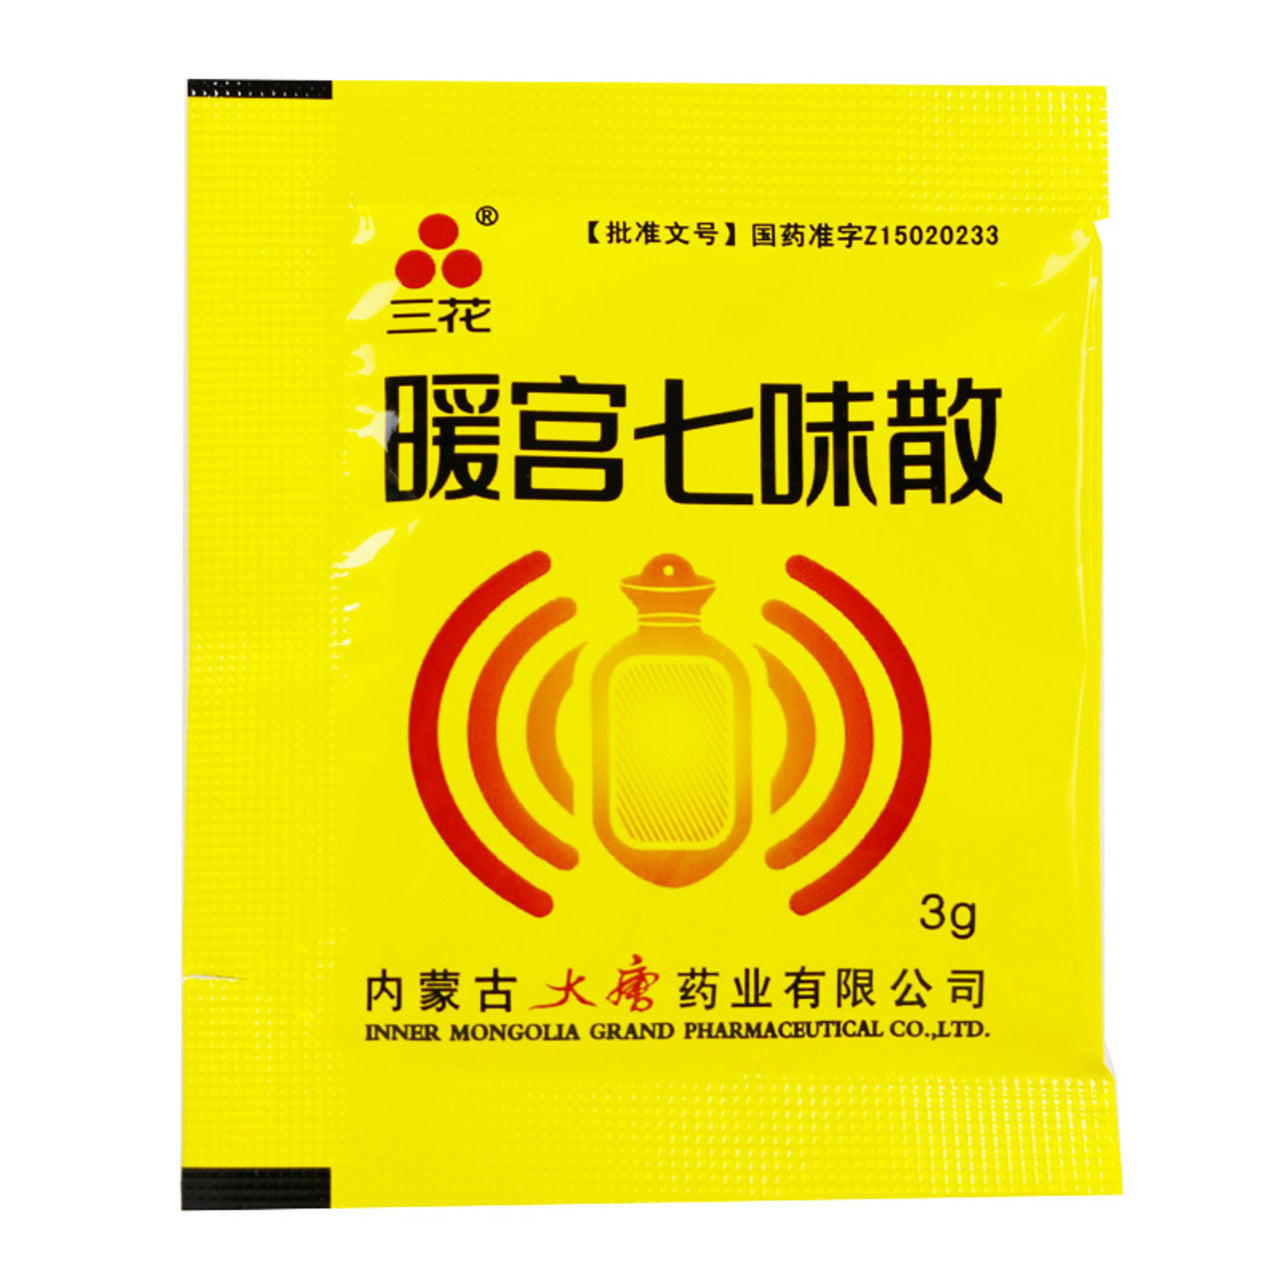 China Herb. Nuonggong Qiwei Powder or Nuan Gong Qi Wei San For Irregular Menstruation. Nuonggong Qiwei San.